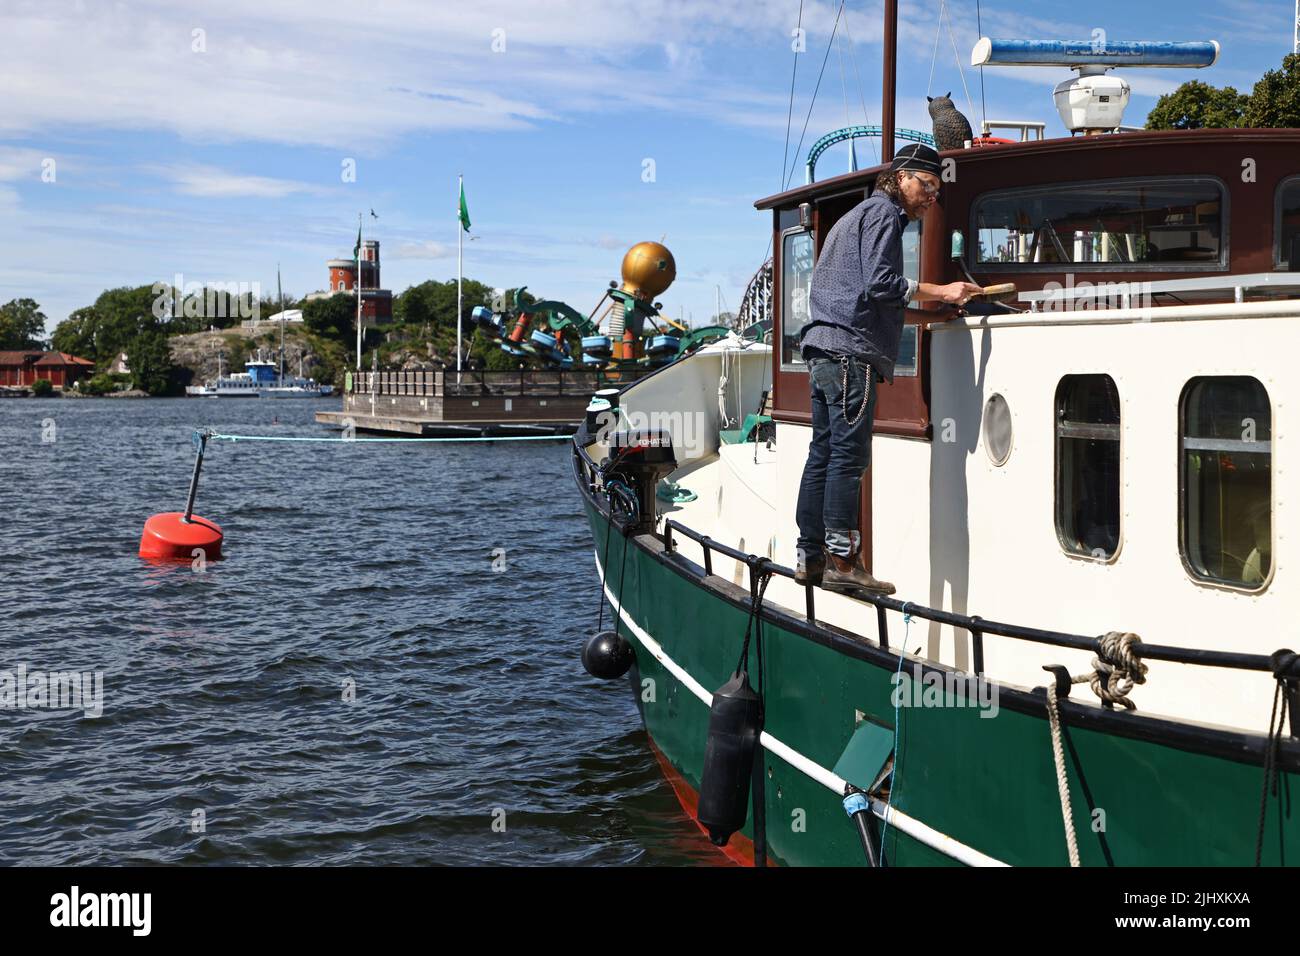 La vie quotidienne à Stockholm, en Suède, le dimanche. Un homme travaille avec son bateau à Djurgården. Banque D'Images